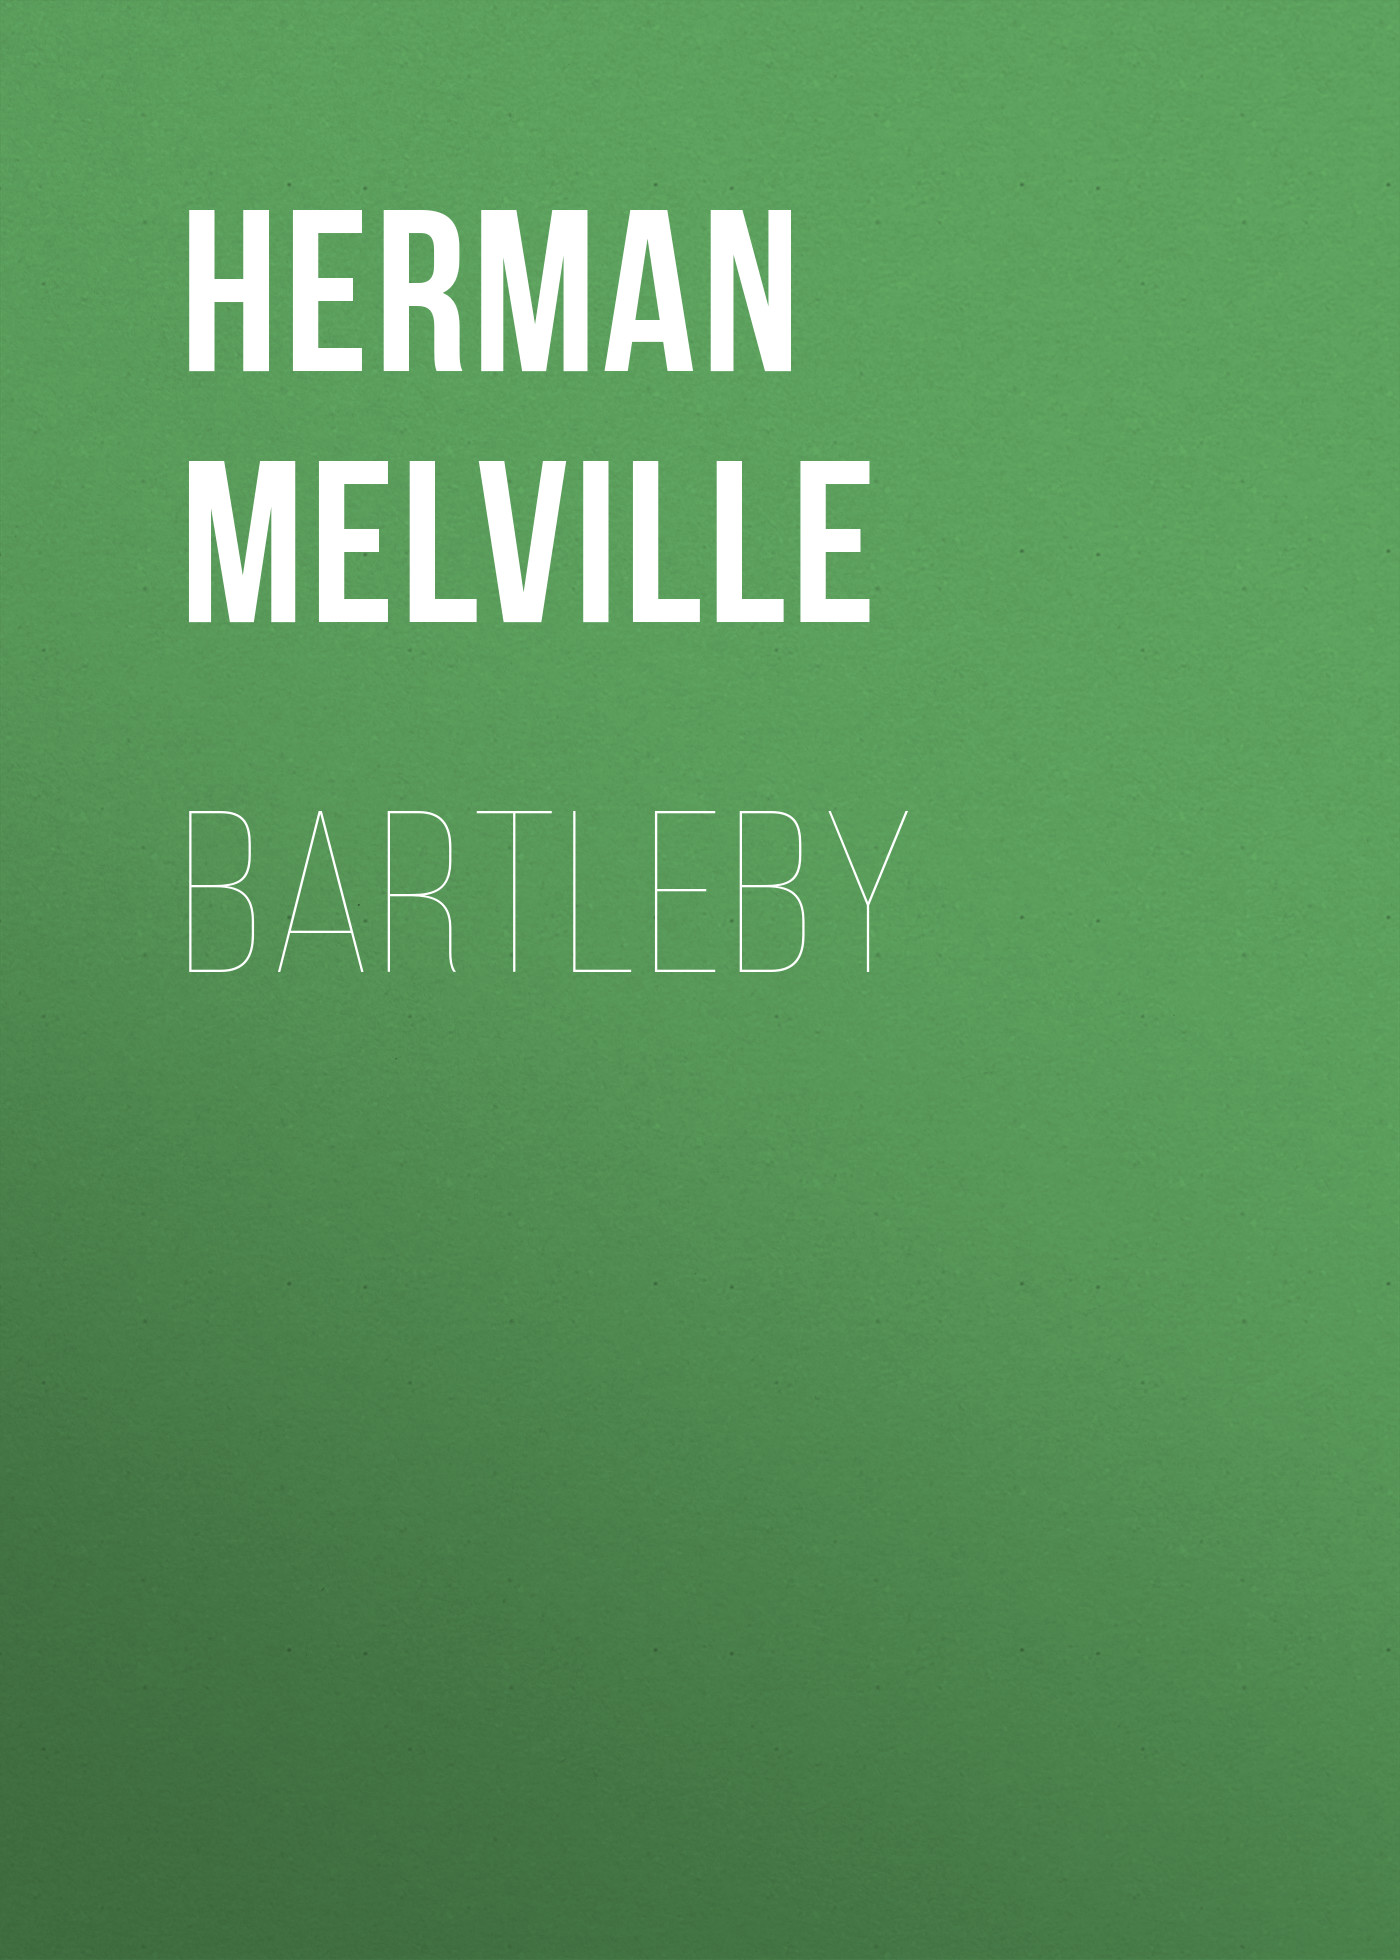 Книга Bartleby из серии , созданная Herman Melville, может относится к жанру Зарубежная классика. Стоимость электронной книги Bartleby с идентификатором 48632036 составляет 0 руб.